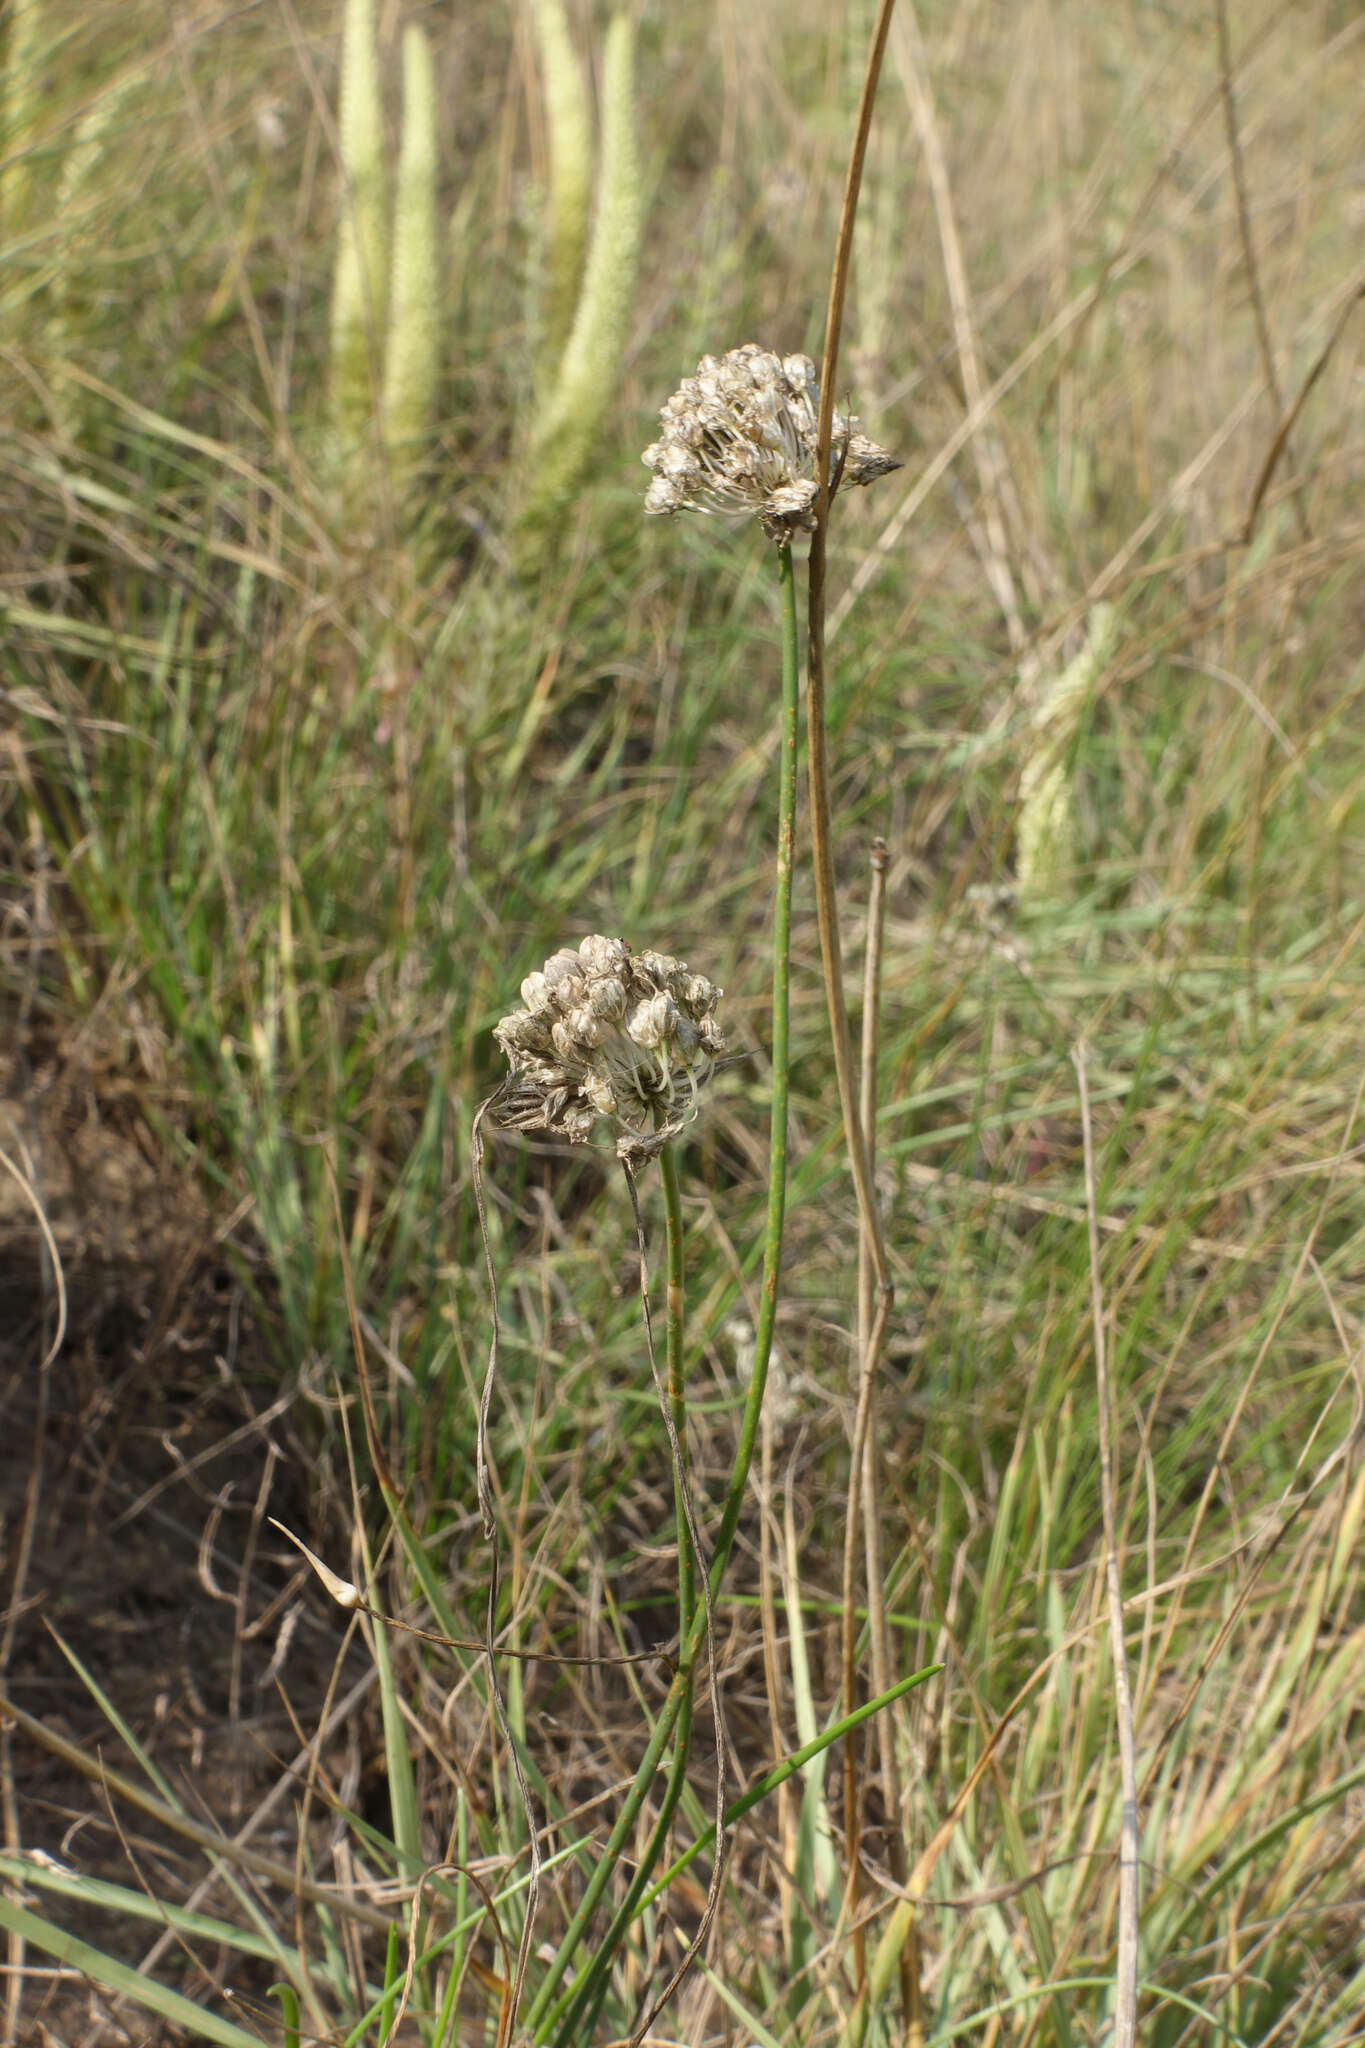 Image of Allium clathratum Ledeb.